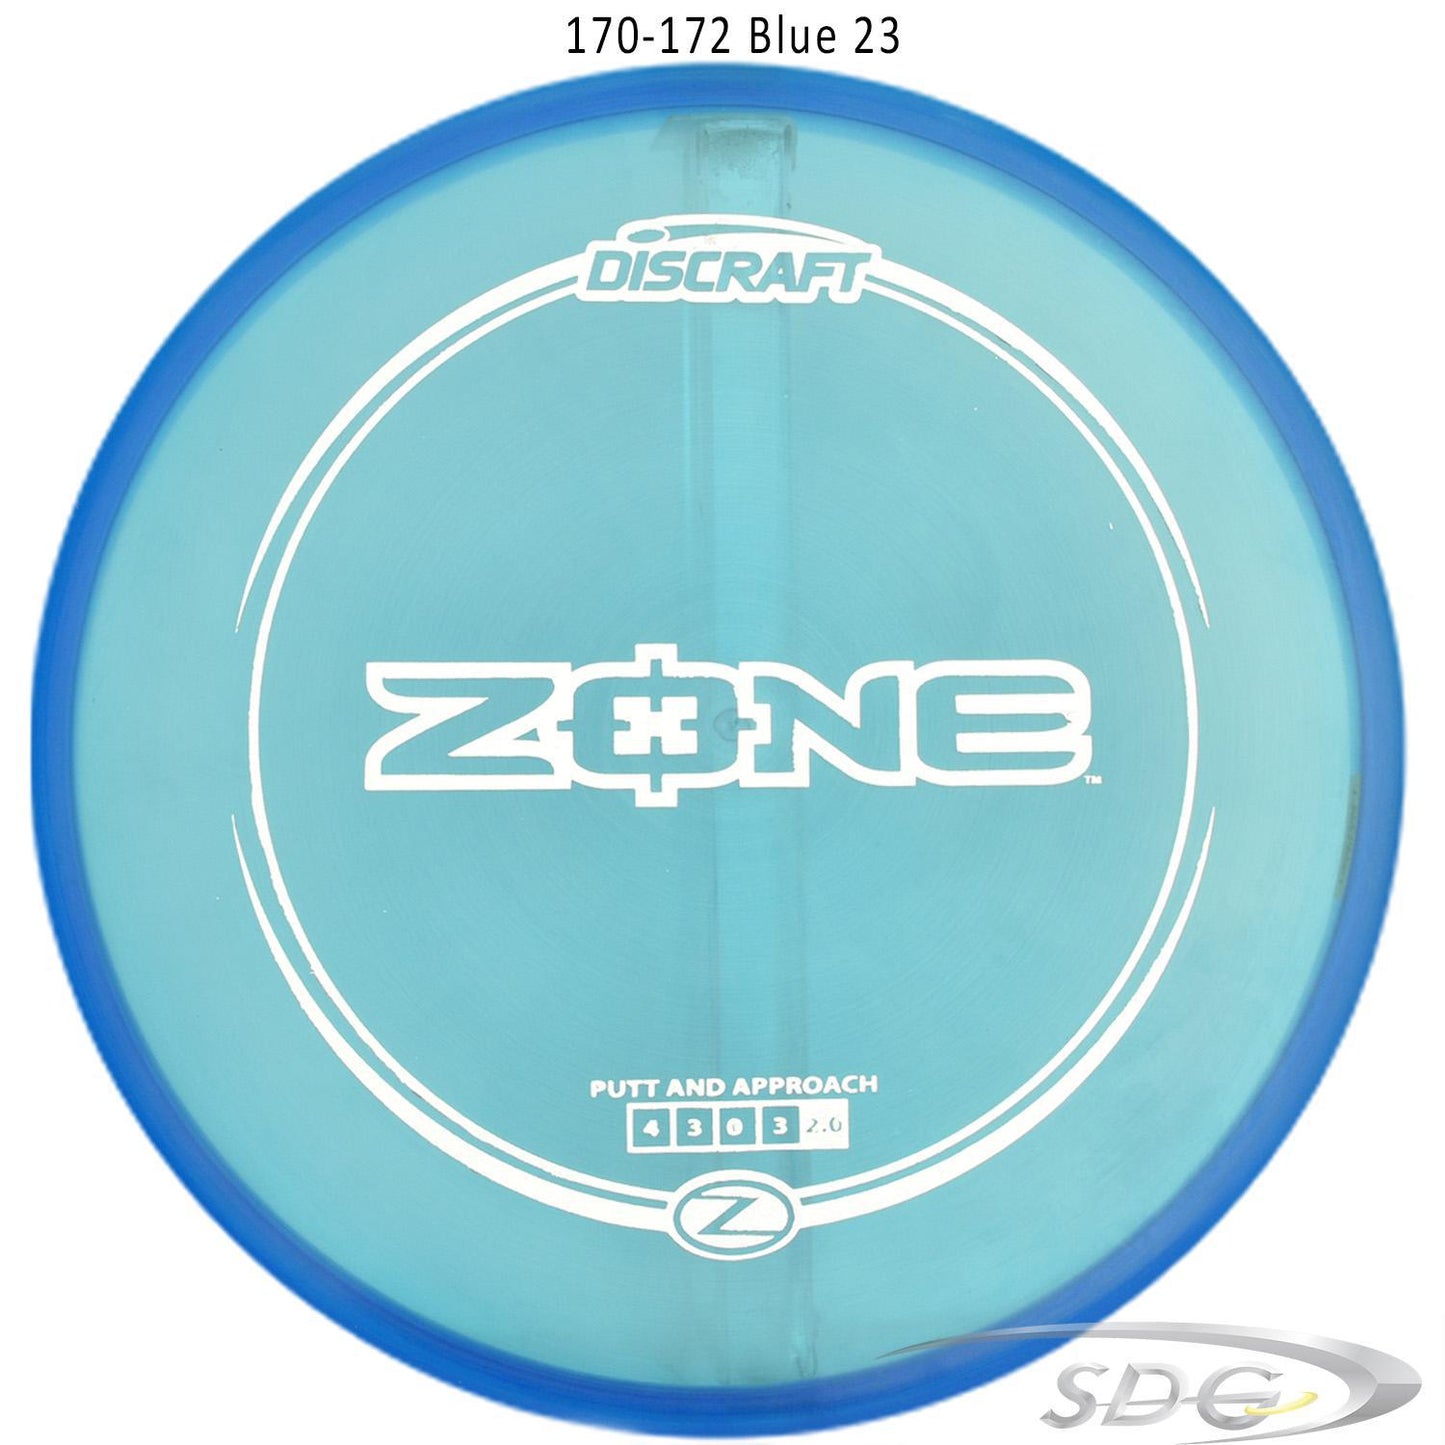 discraft-z-line-zone-disc-golf-putter 170-172 Blue 23